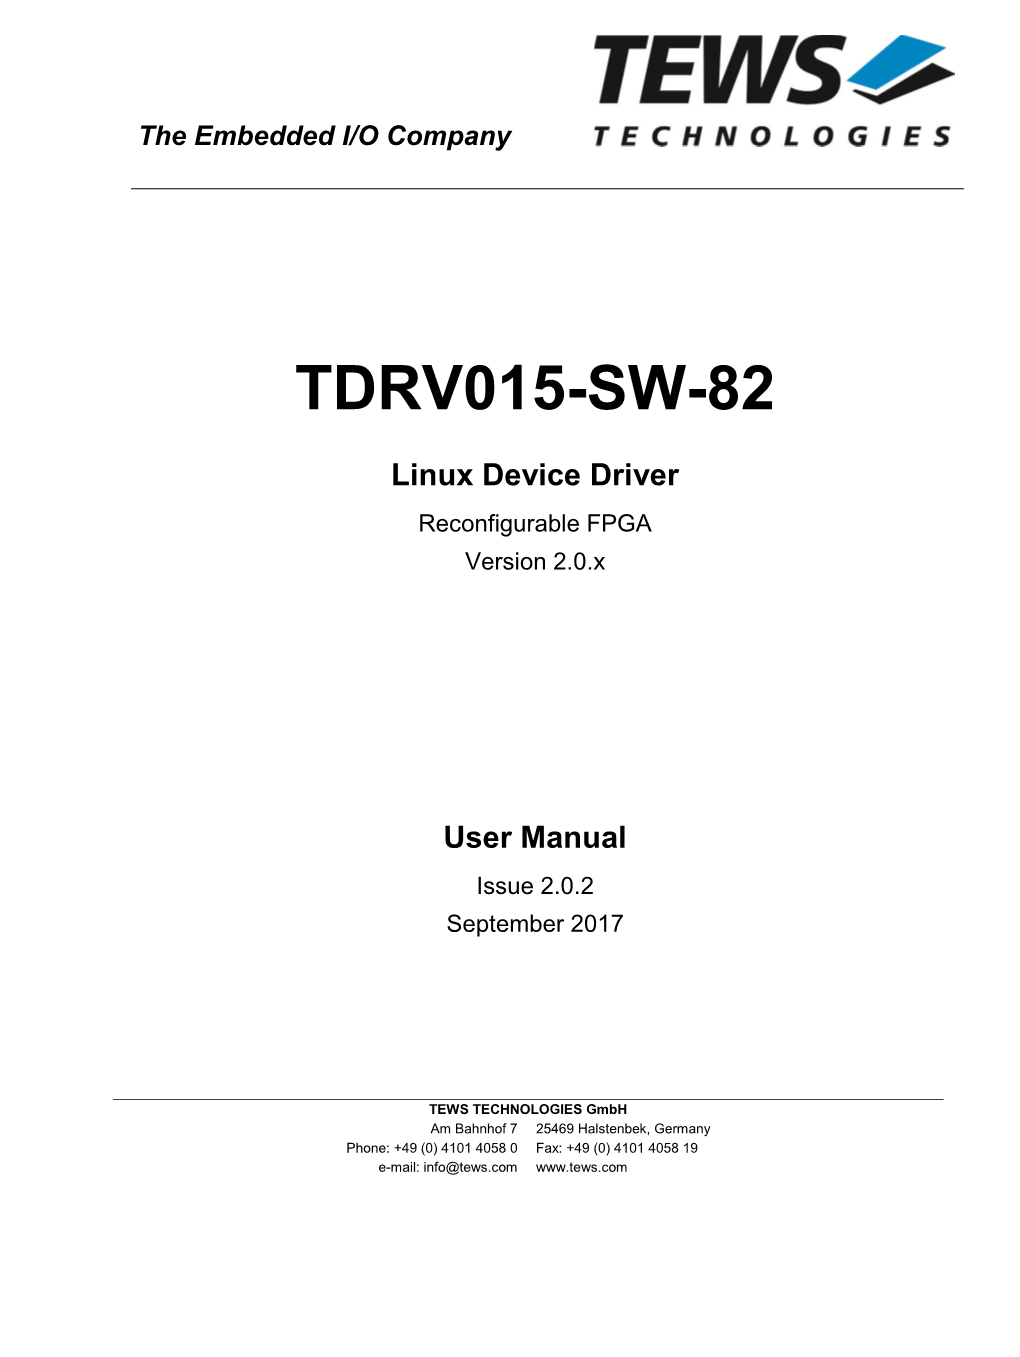 User Manual Issue 2.0.2 September 2017